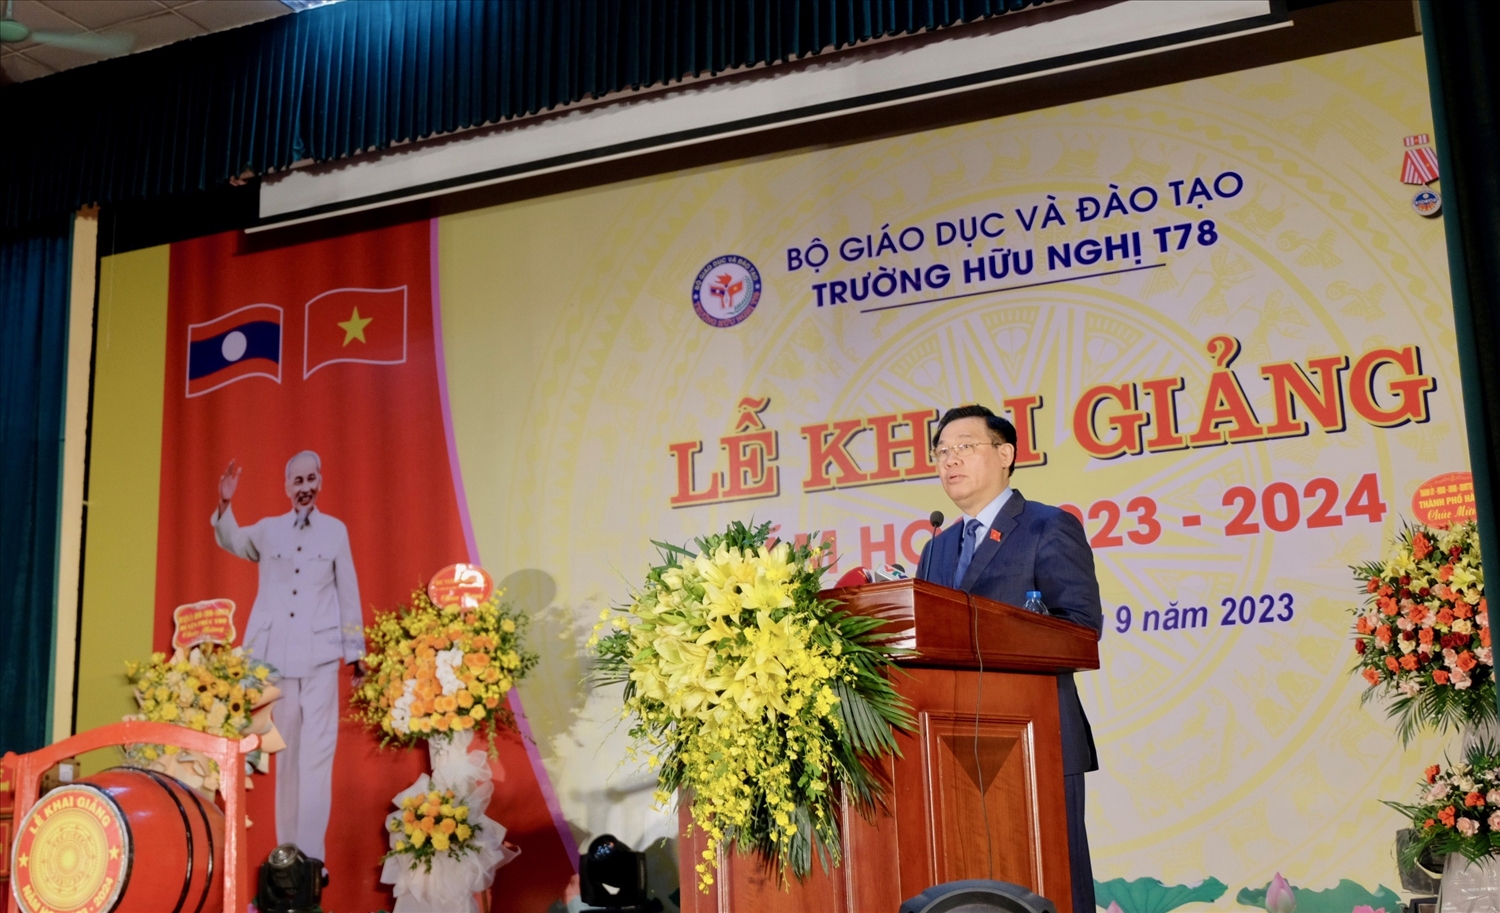 Chủ tịch Quốc hội Vương Đình Huệ phát biểu tại lễ khai giảng trường Hữu nghị T78.